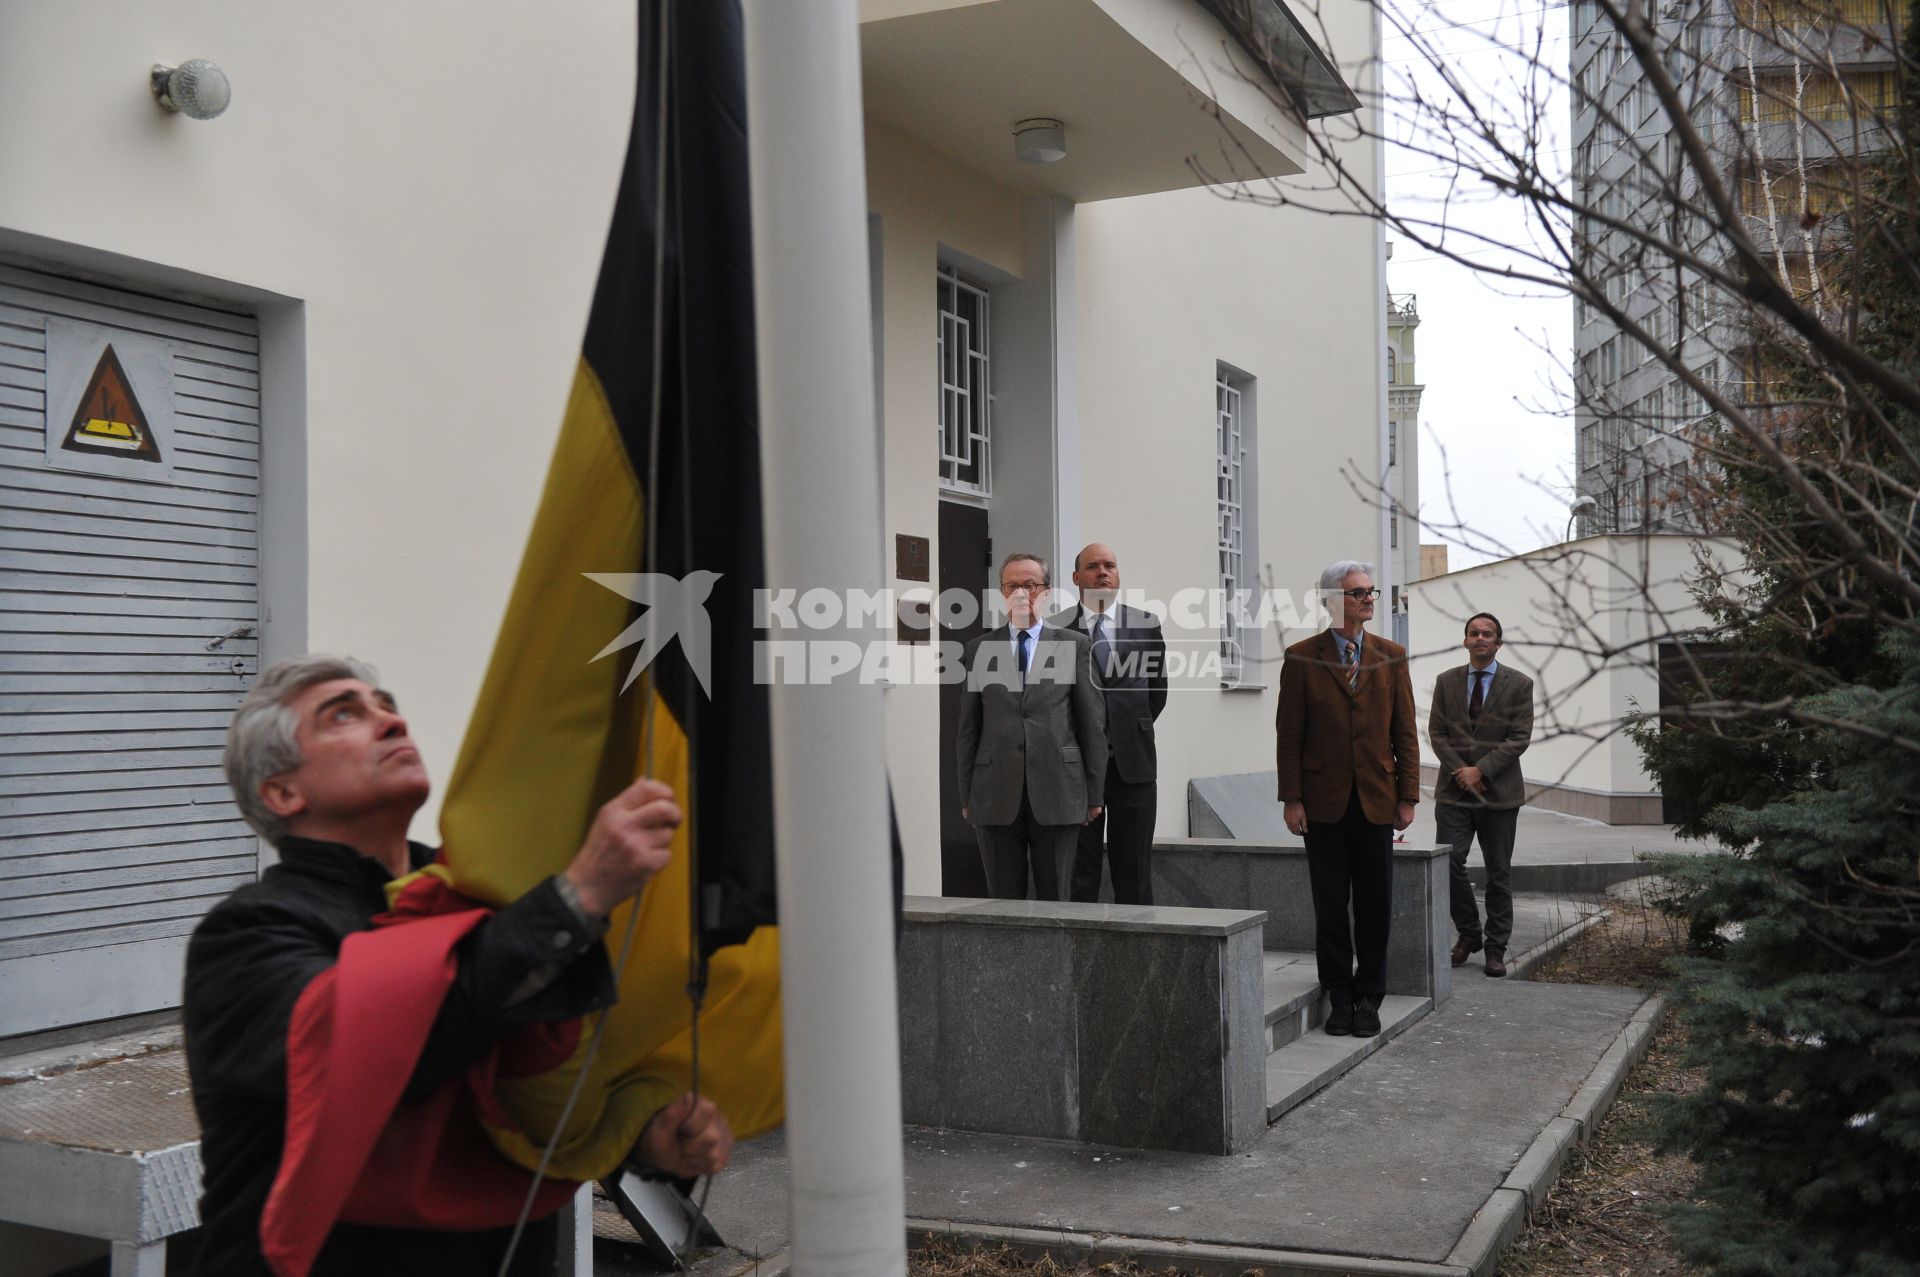 Москва. Бельгийский посол Алекс ван Меувен  (второй слева) рядом с приспущенным  флагом у посольства Бельгии   в память о погибших в результате серии терактов в Брюсселе.